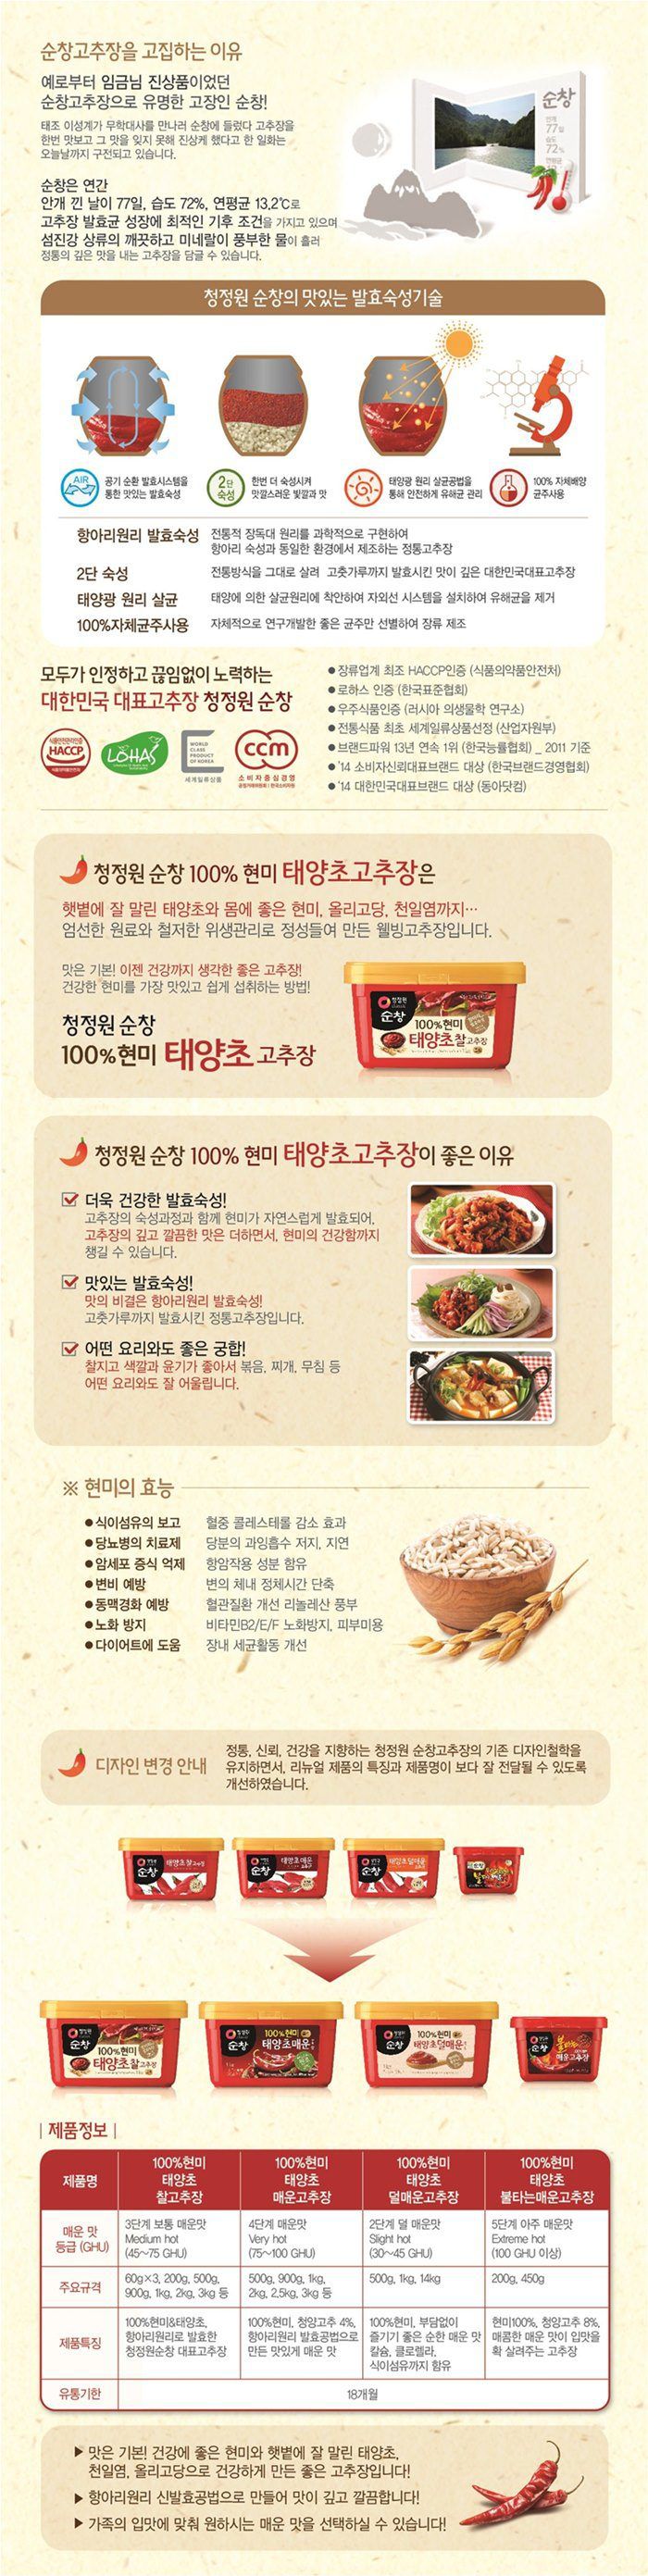 韓國食品-[청정원] 순창 태양초 찰고추장 1kg